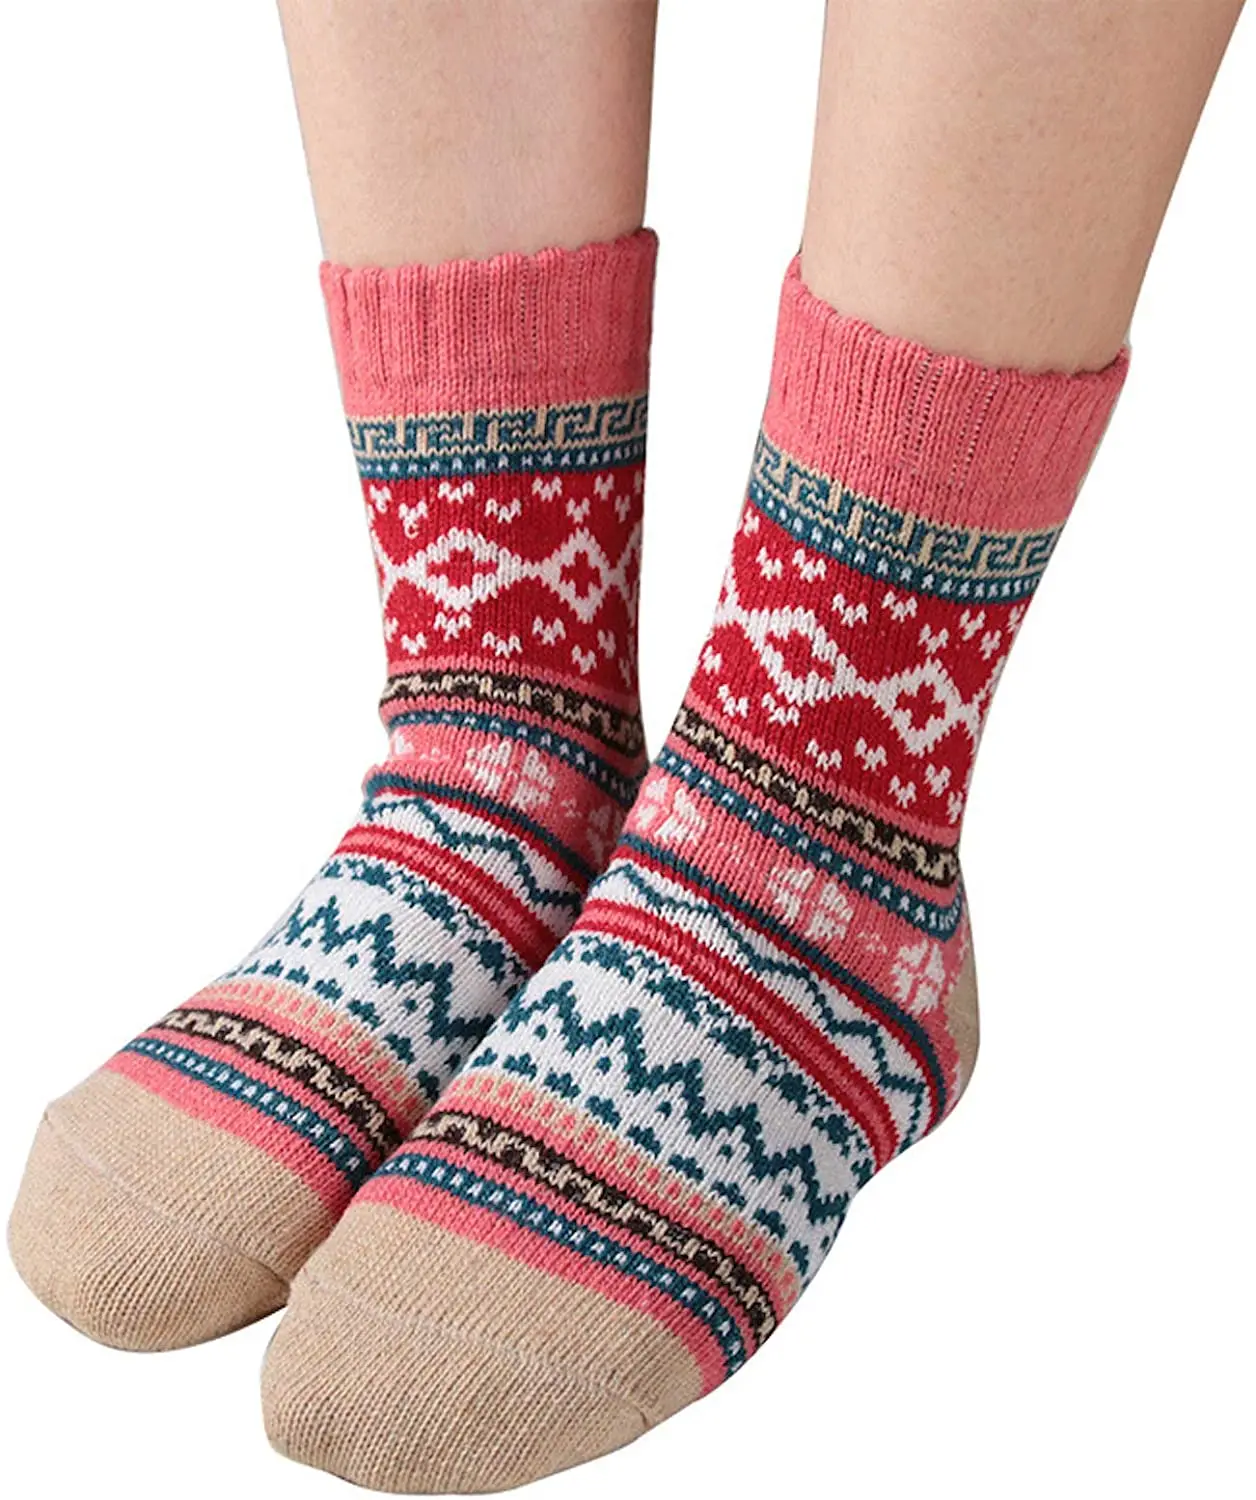 Зима в теплых шерстяных носках, рождественские подарки для мужчин и женщин, разноцветные, свободный размер, 5 упак./пакет1